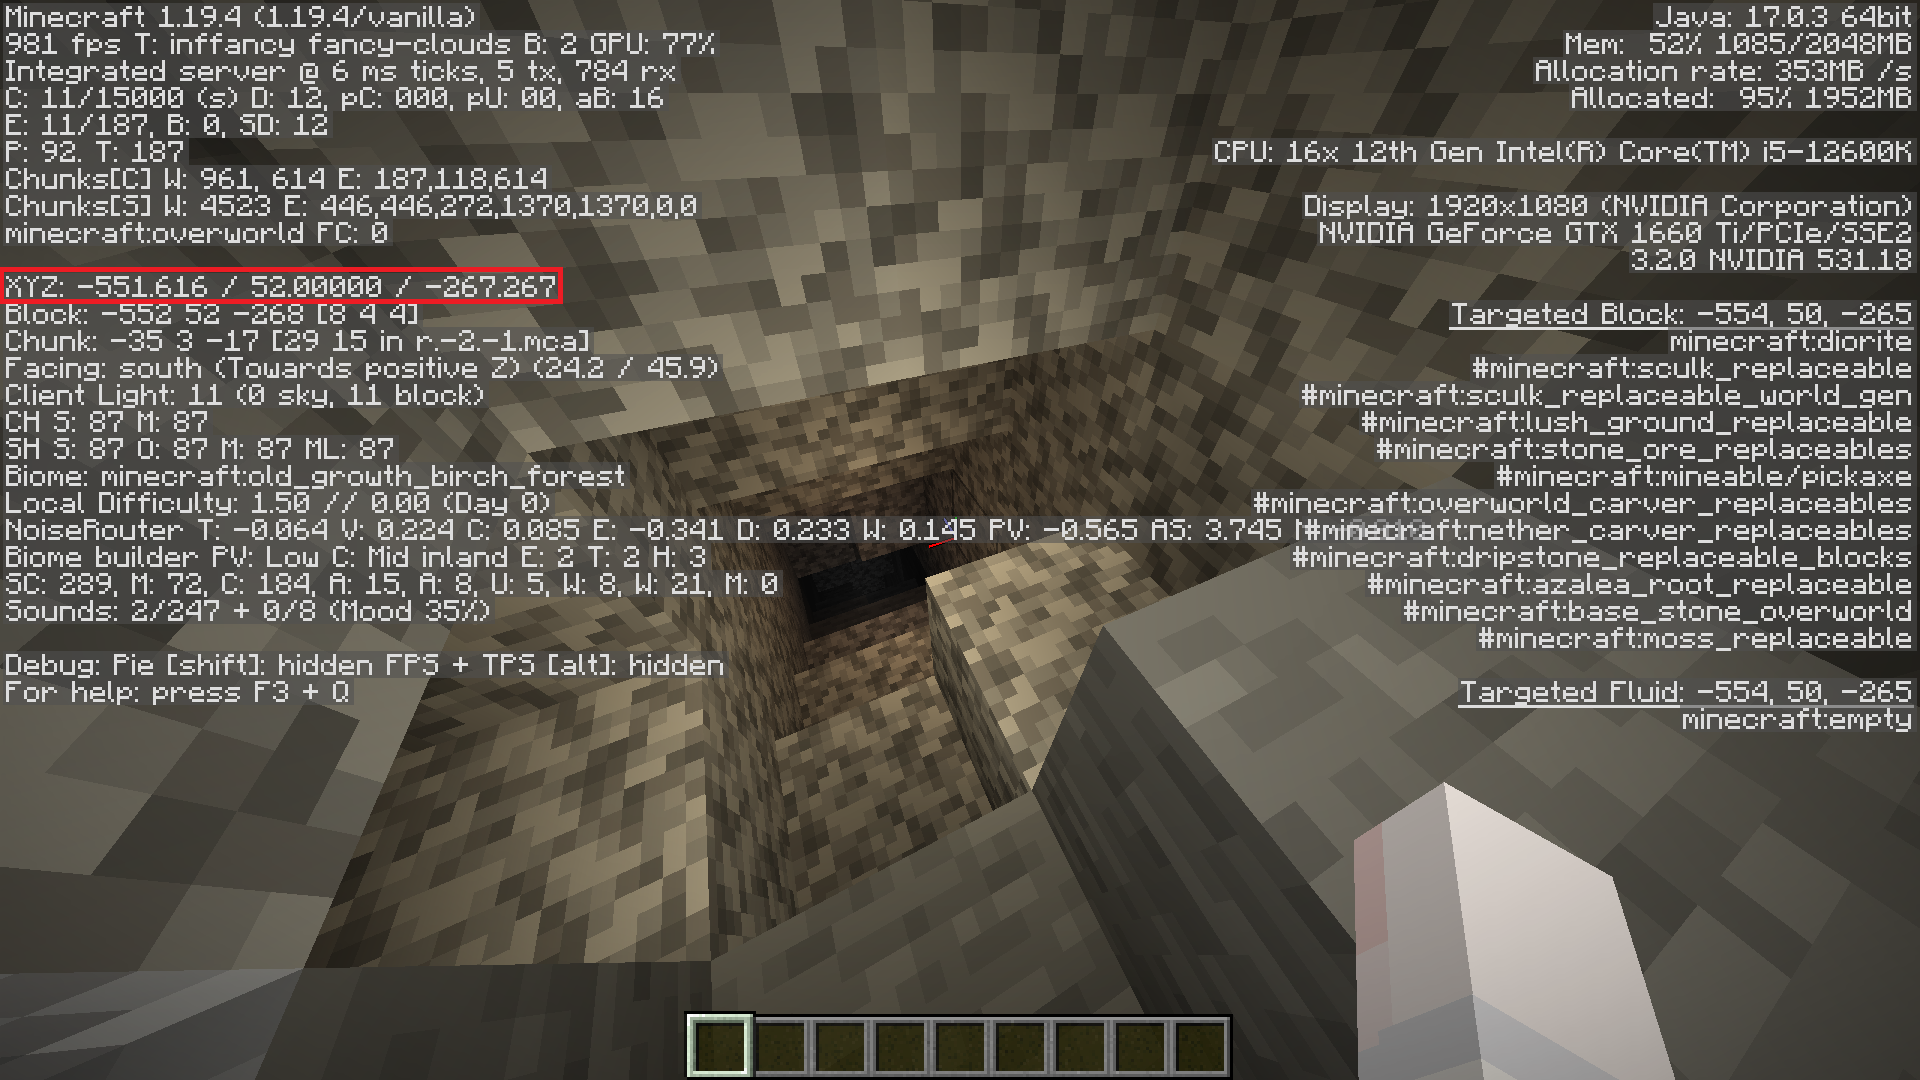 تصویر نشان دهنده سطح Y در Minecraft برای یافتن الماس است